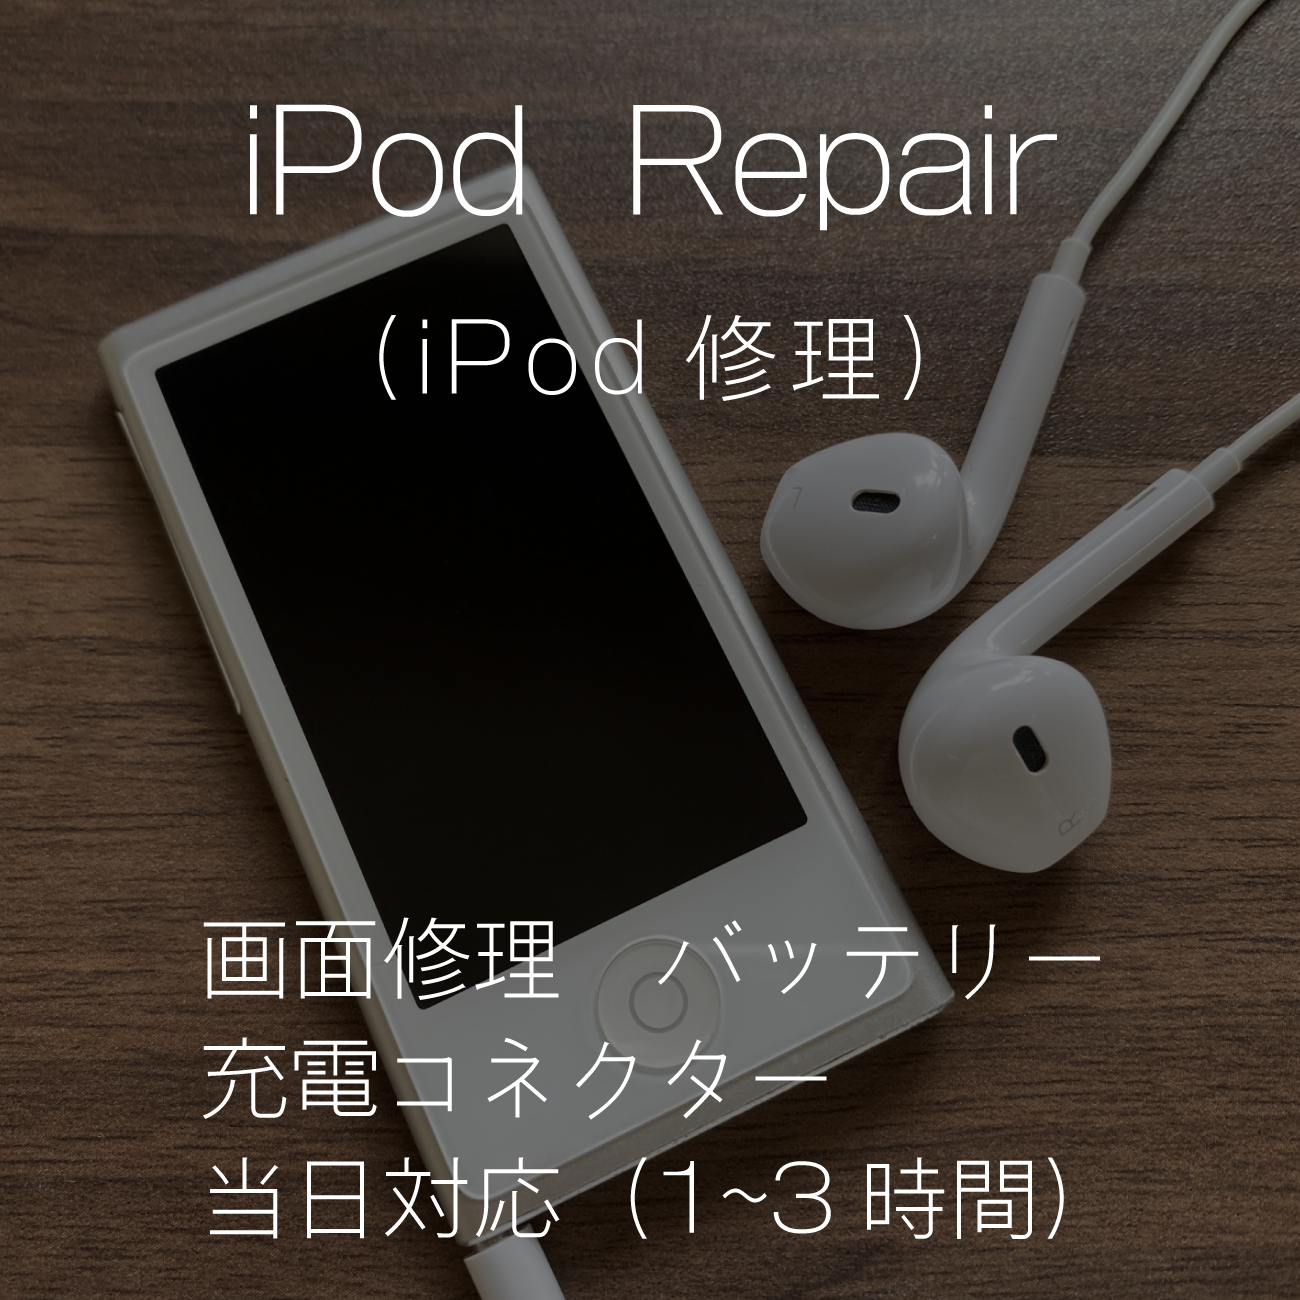 iPhone修理iR福山 iPod修理価格